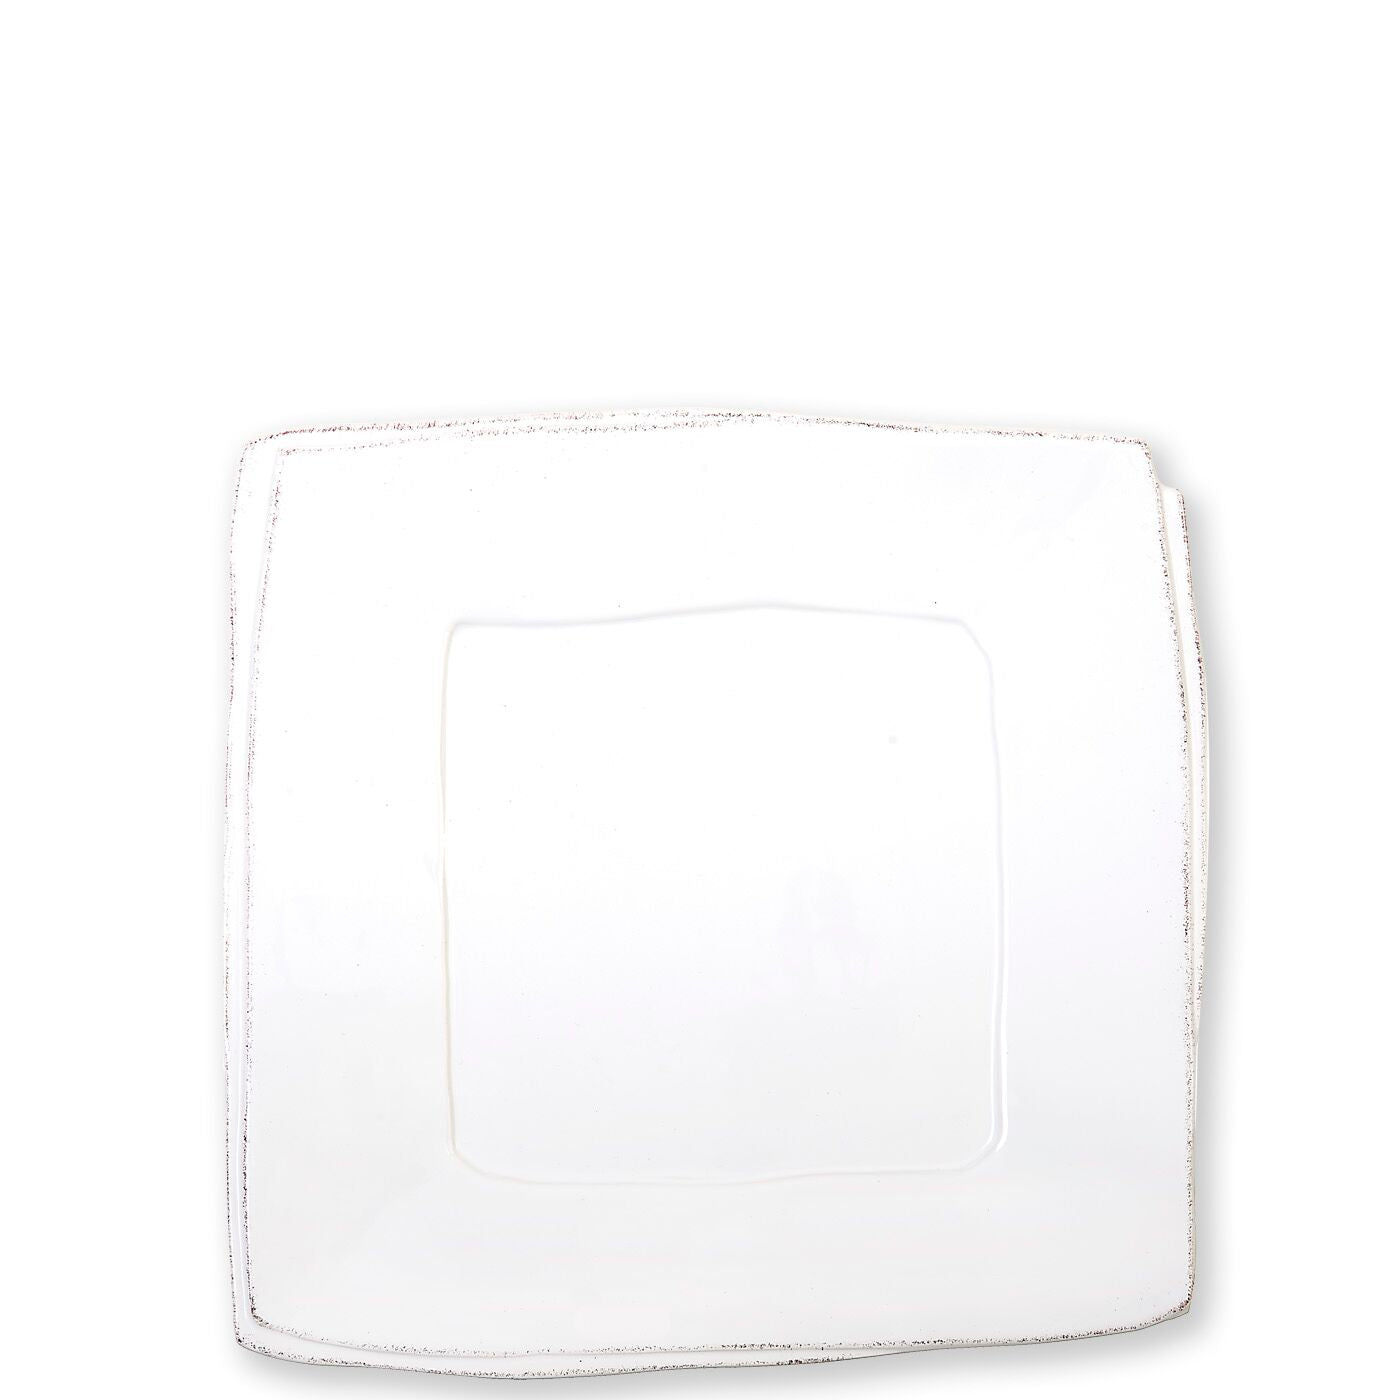 Vietri Lastra White Square Platter, Handmade Stoneware Serving Plate